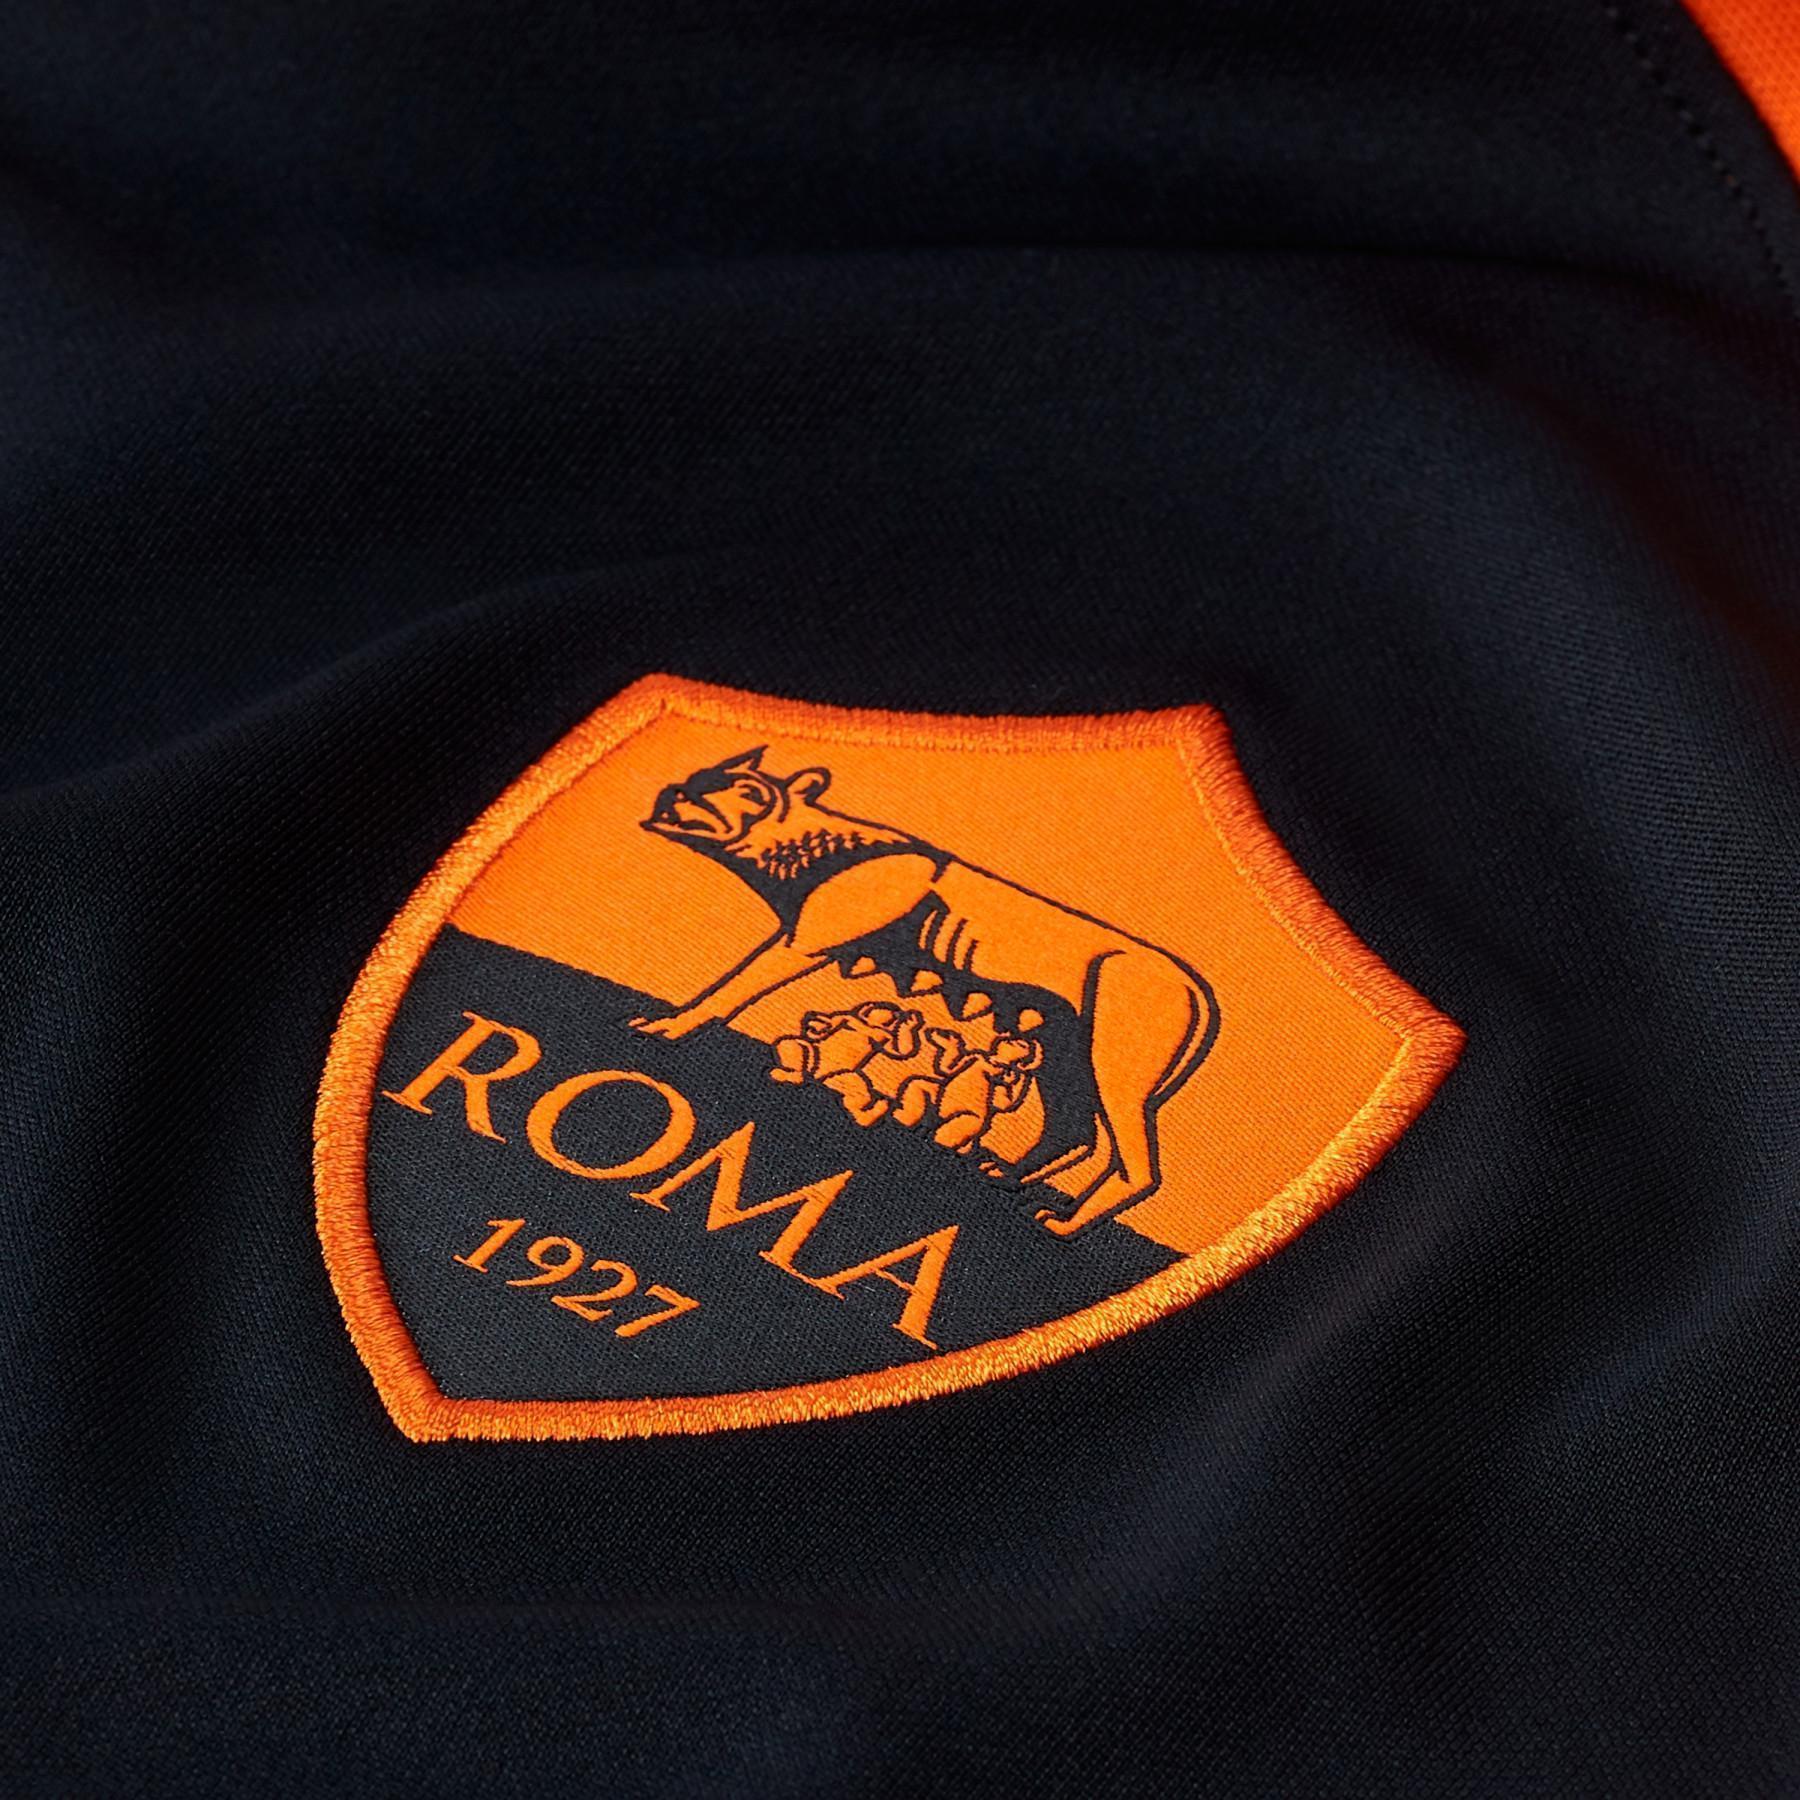 3. koszulka AS Roma 2020/21